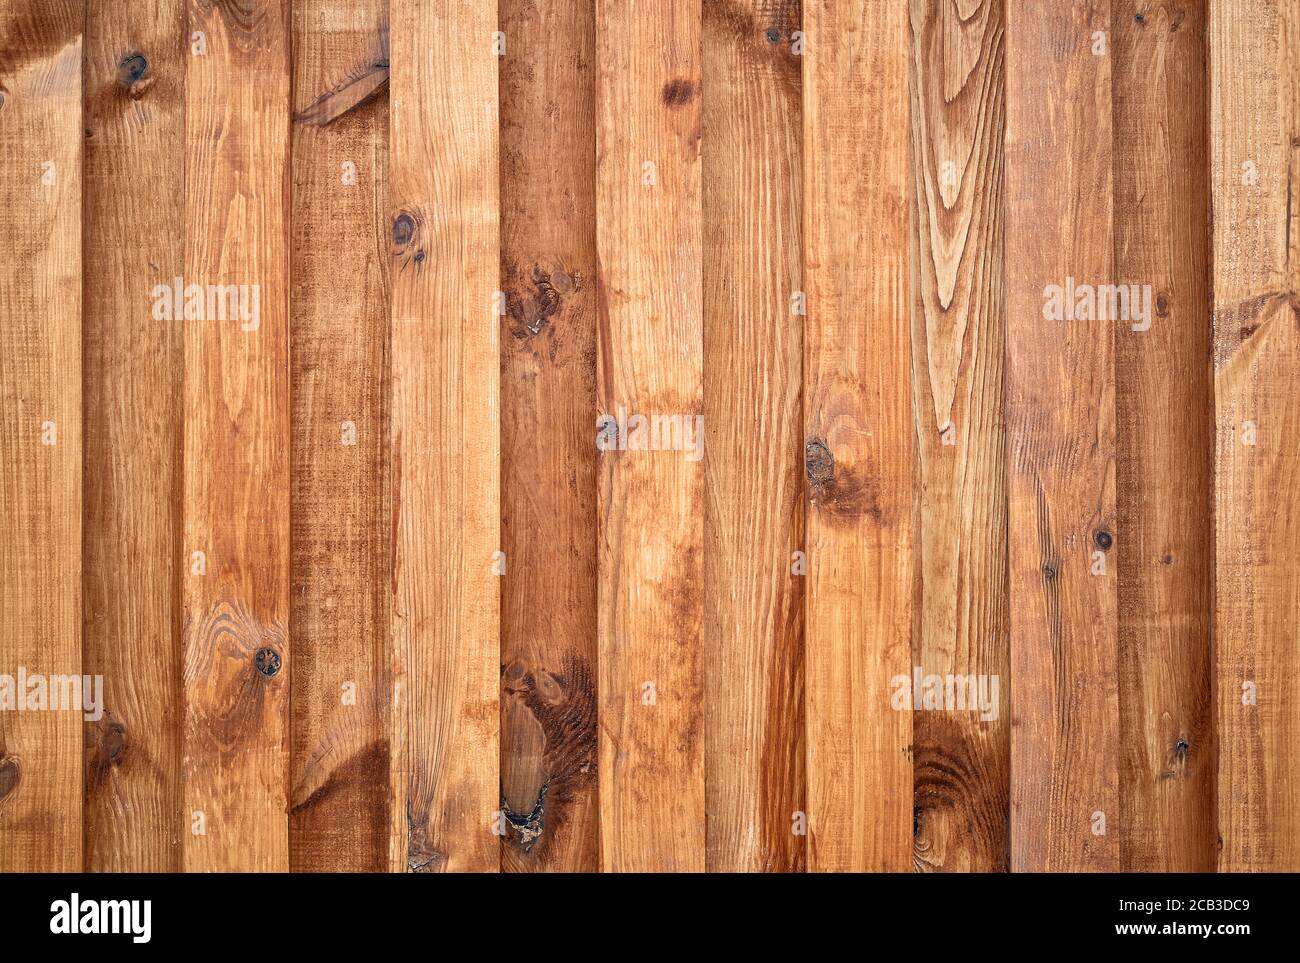 Còn gì tuyệt vời hơn khi sử dụng vân gỗ cũ để làm nền hoặc mockup cho sản phẩm của bạn? Với những họa tiết độc đáo và tinh tế của vân gỗ cũ, bạn sẽ mang lại một sản phẩm đầy chất lượng và chuyên nghiệp. Hãy click vào hình ảnh và cùng trải nghiệm vẻ đẹp của vân gỗ cũ này!